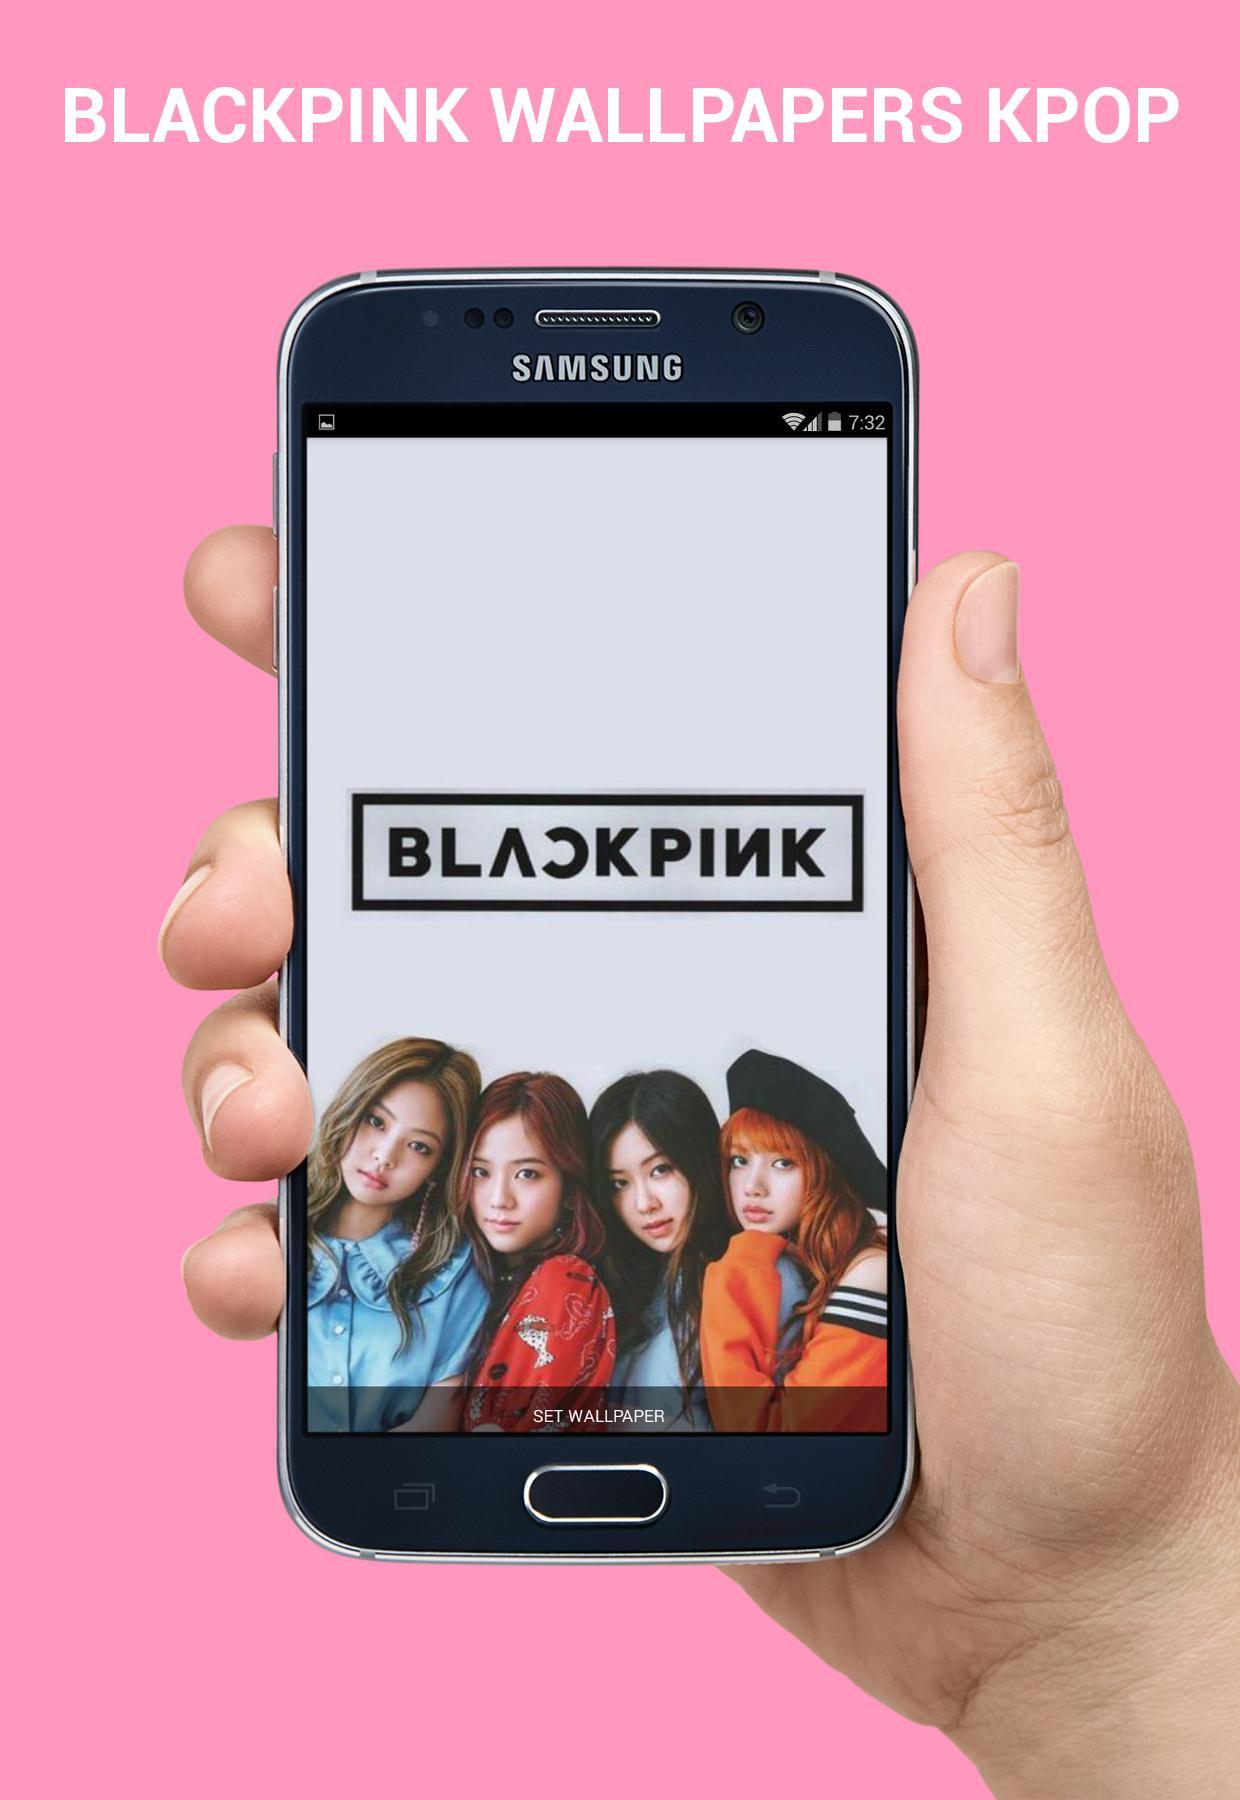 Android 用の ブラックピンクの壁紙kpop Apk をダウンロード